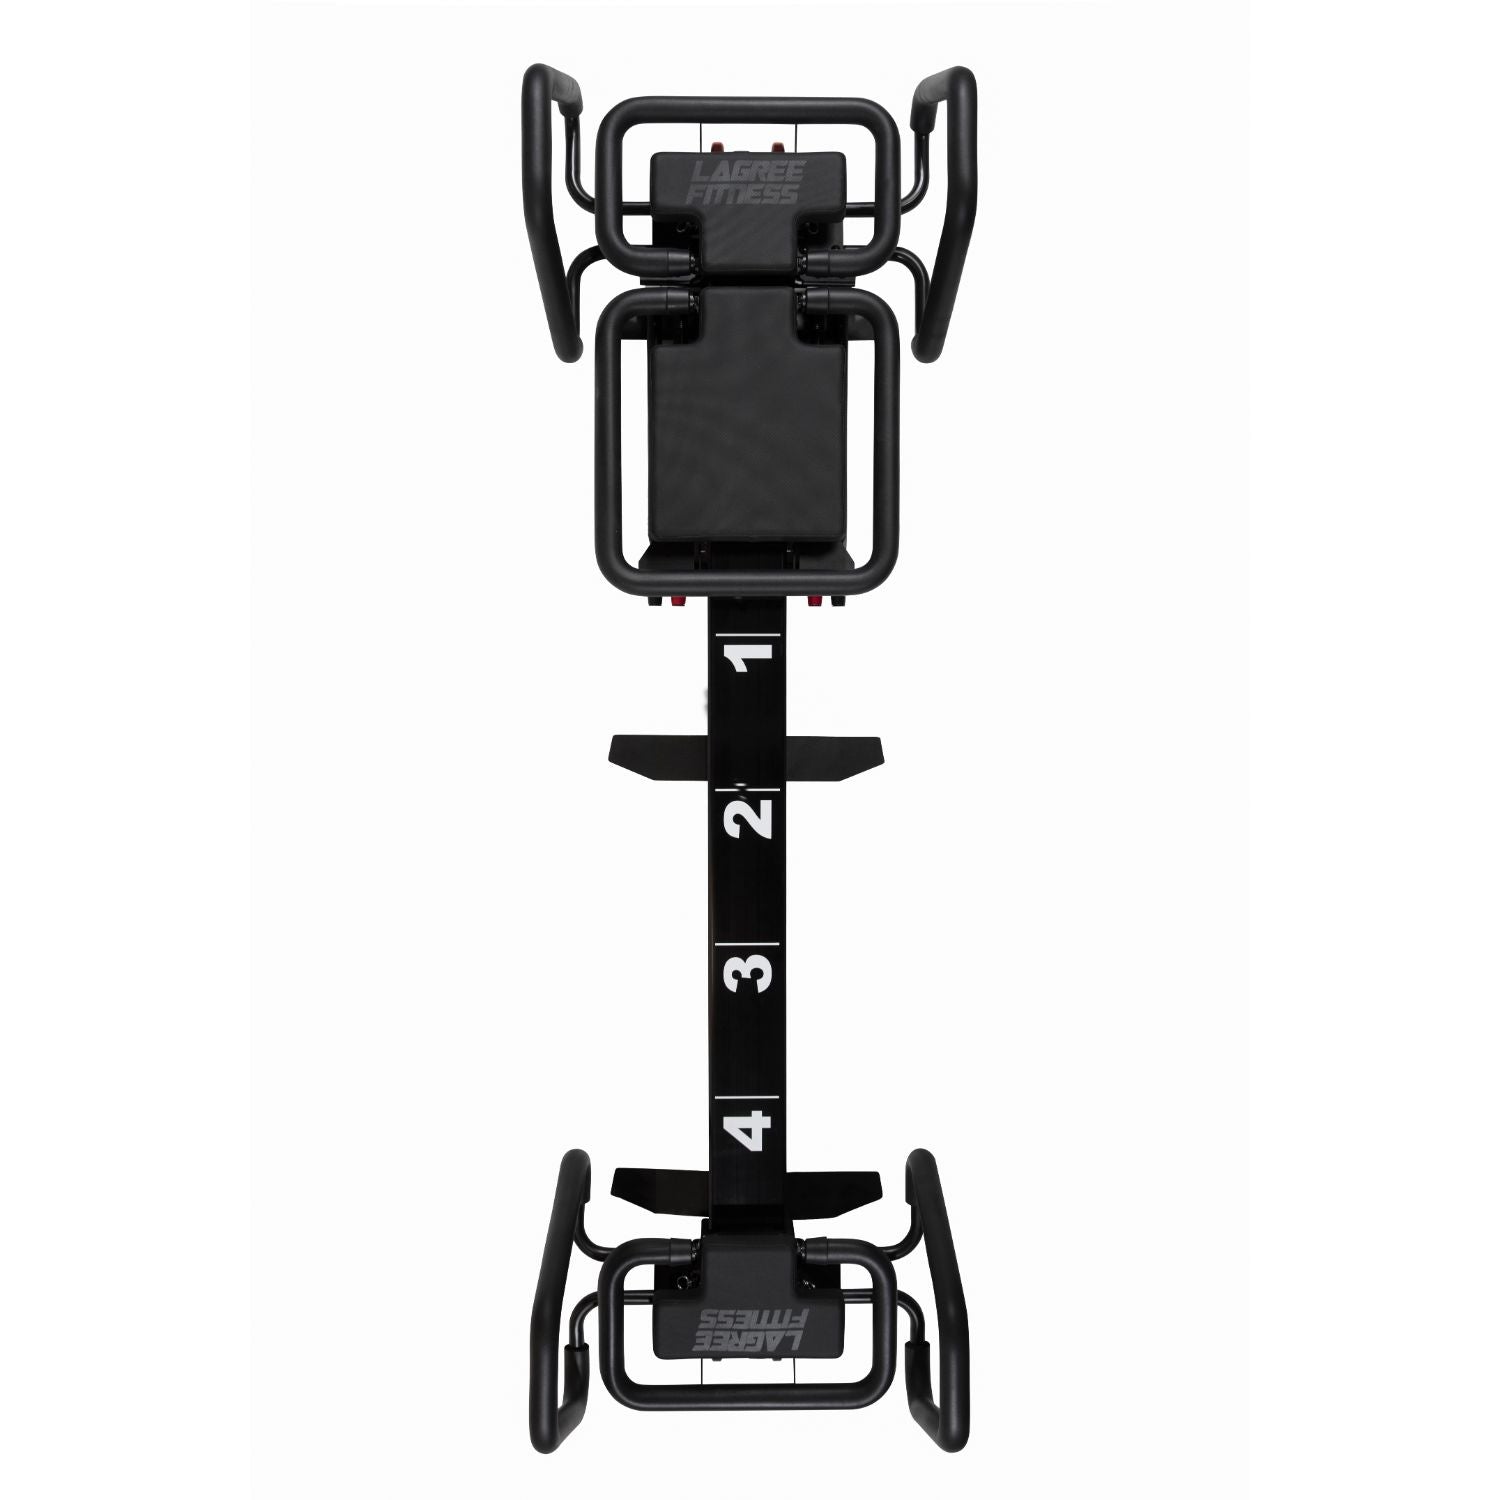 Lagree Fitness Microformer Fully Loaded Reformer - Upper Livin